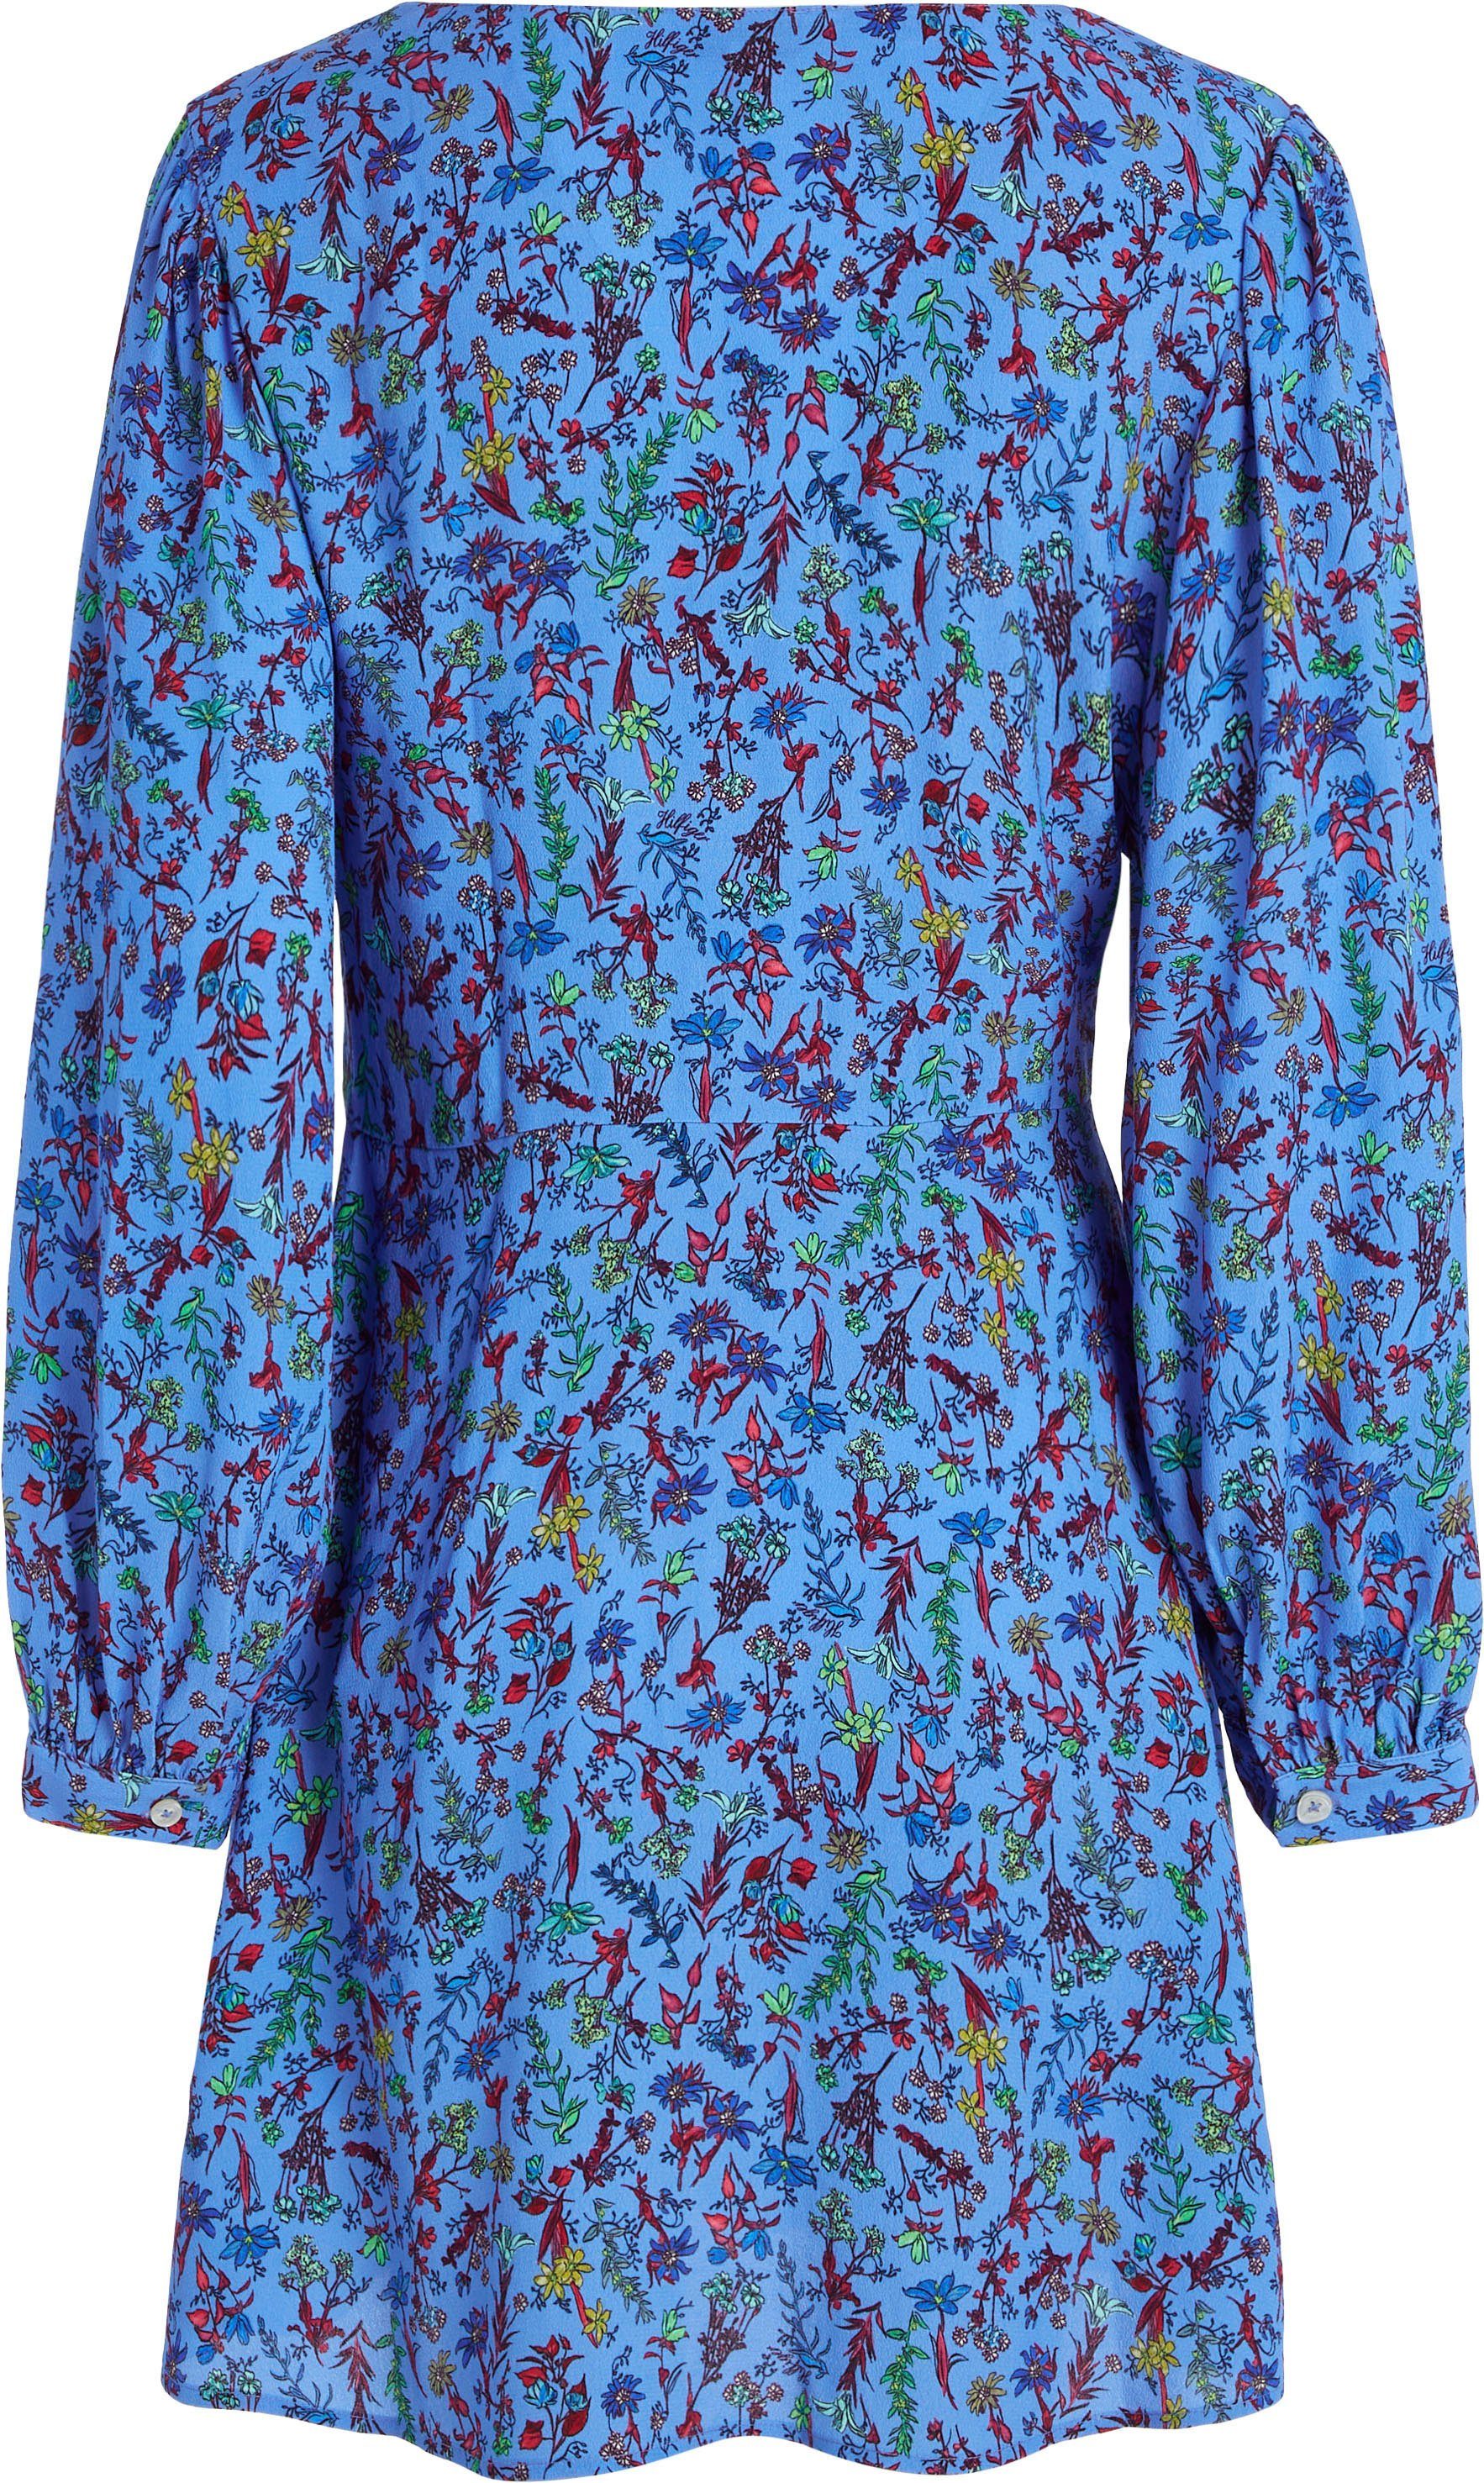 Tommy Hilfiger DRESS Shirtkleid VIS in Floral-Print SHORT LS FLORAL farbenfrohem